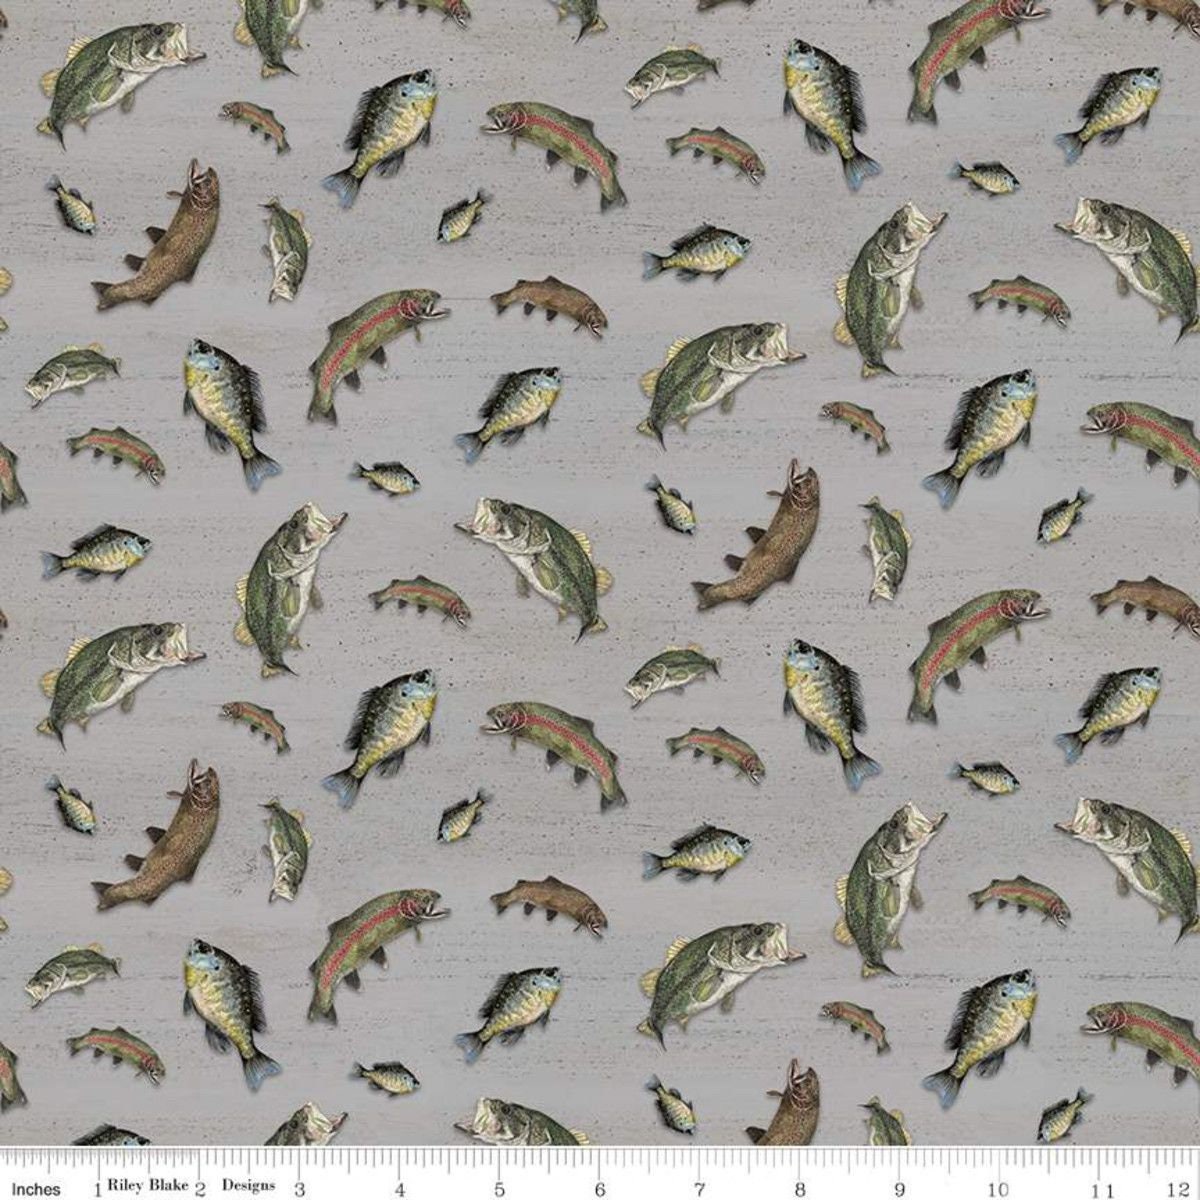 At The Lake by Tara Reed Fish Gray C10552-GRAY Cotton Woven Fabric